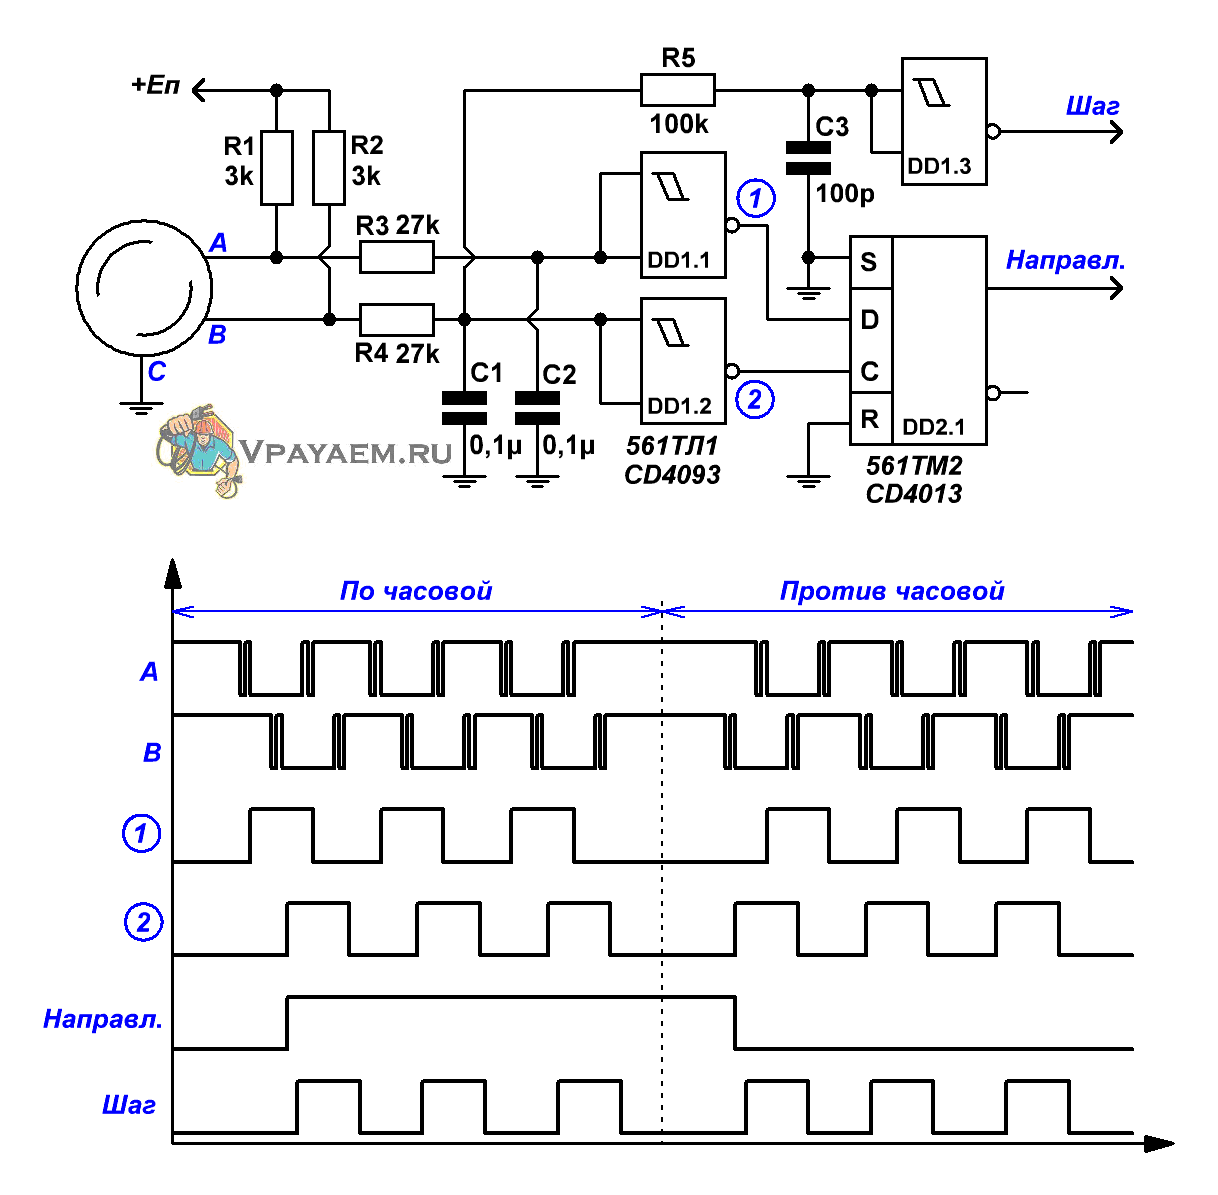 Схема обработки сигналов энкодера с подавлением дребезга и указанием направления